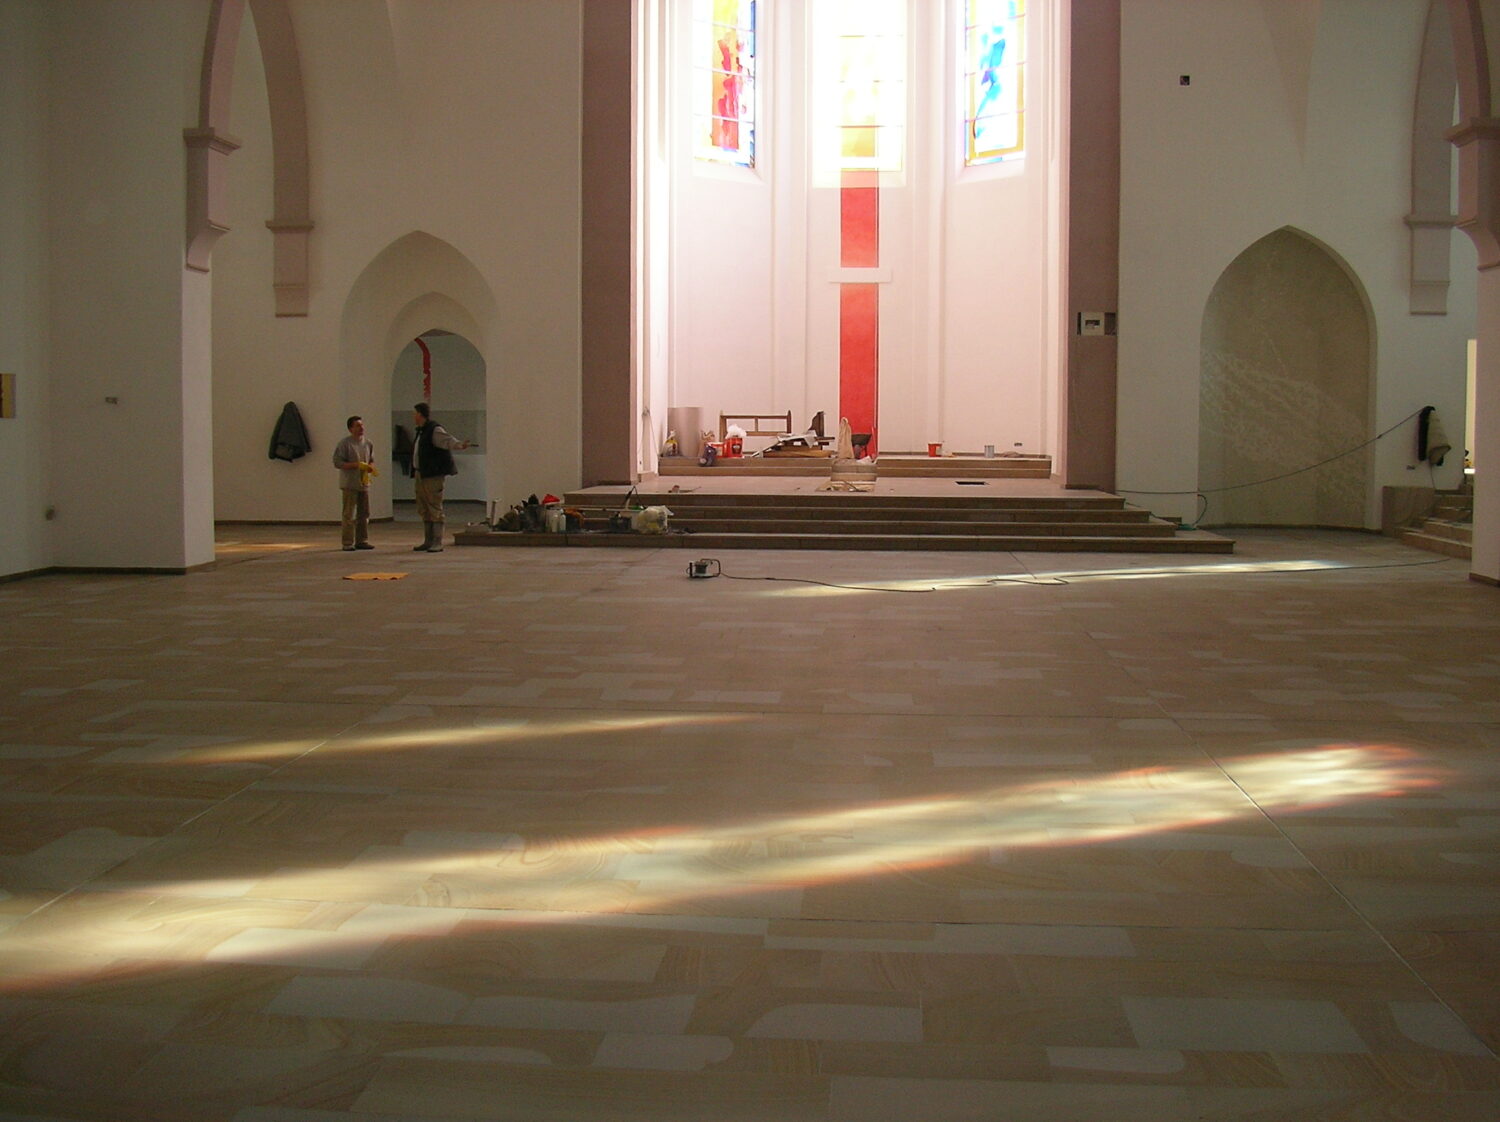 Bild: Sandstein in einer Kirche aufgearbeitet durch Naturstein Biermann